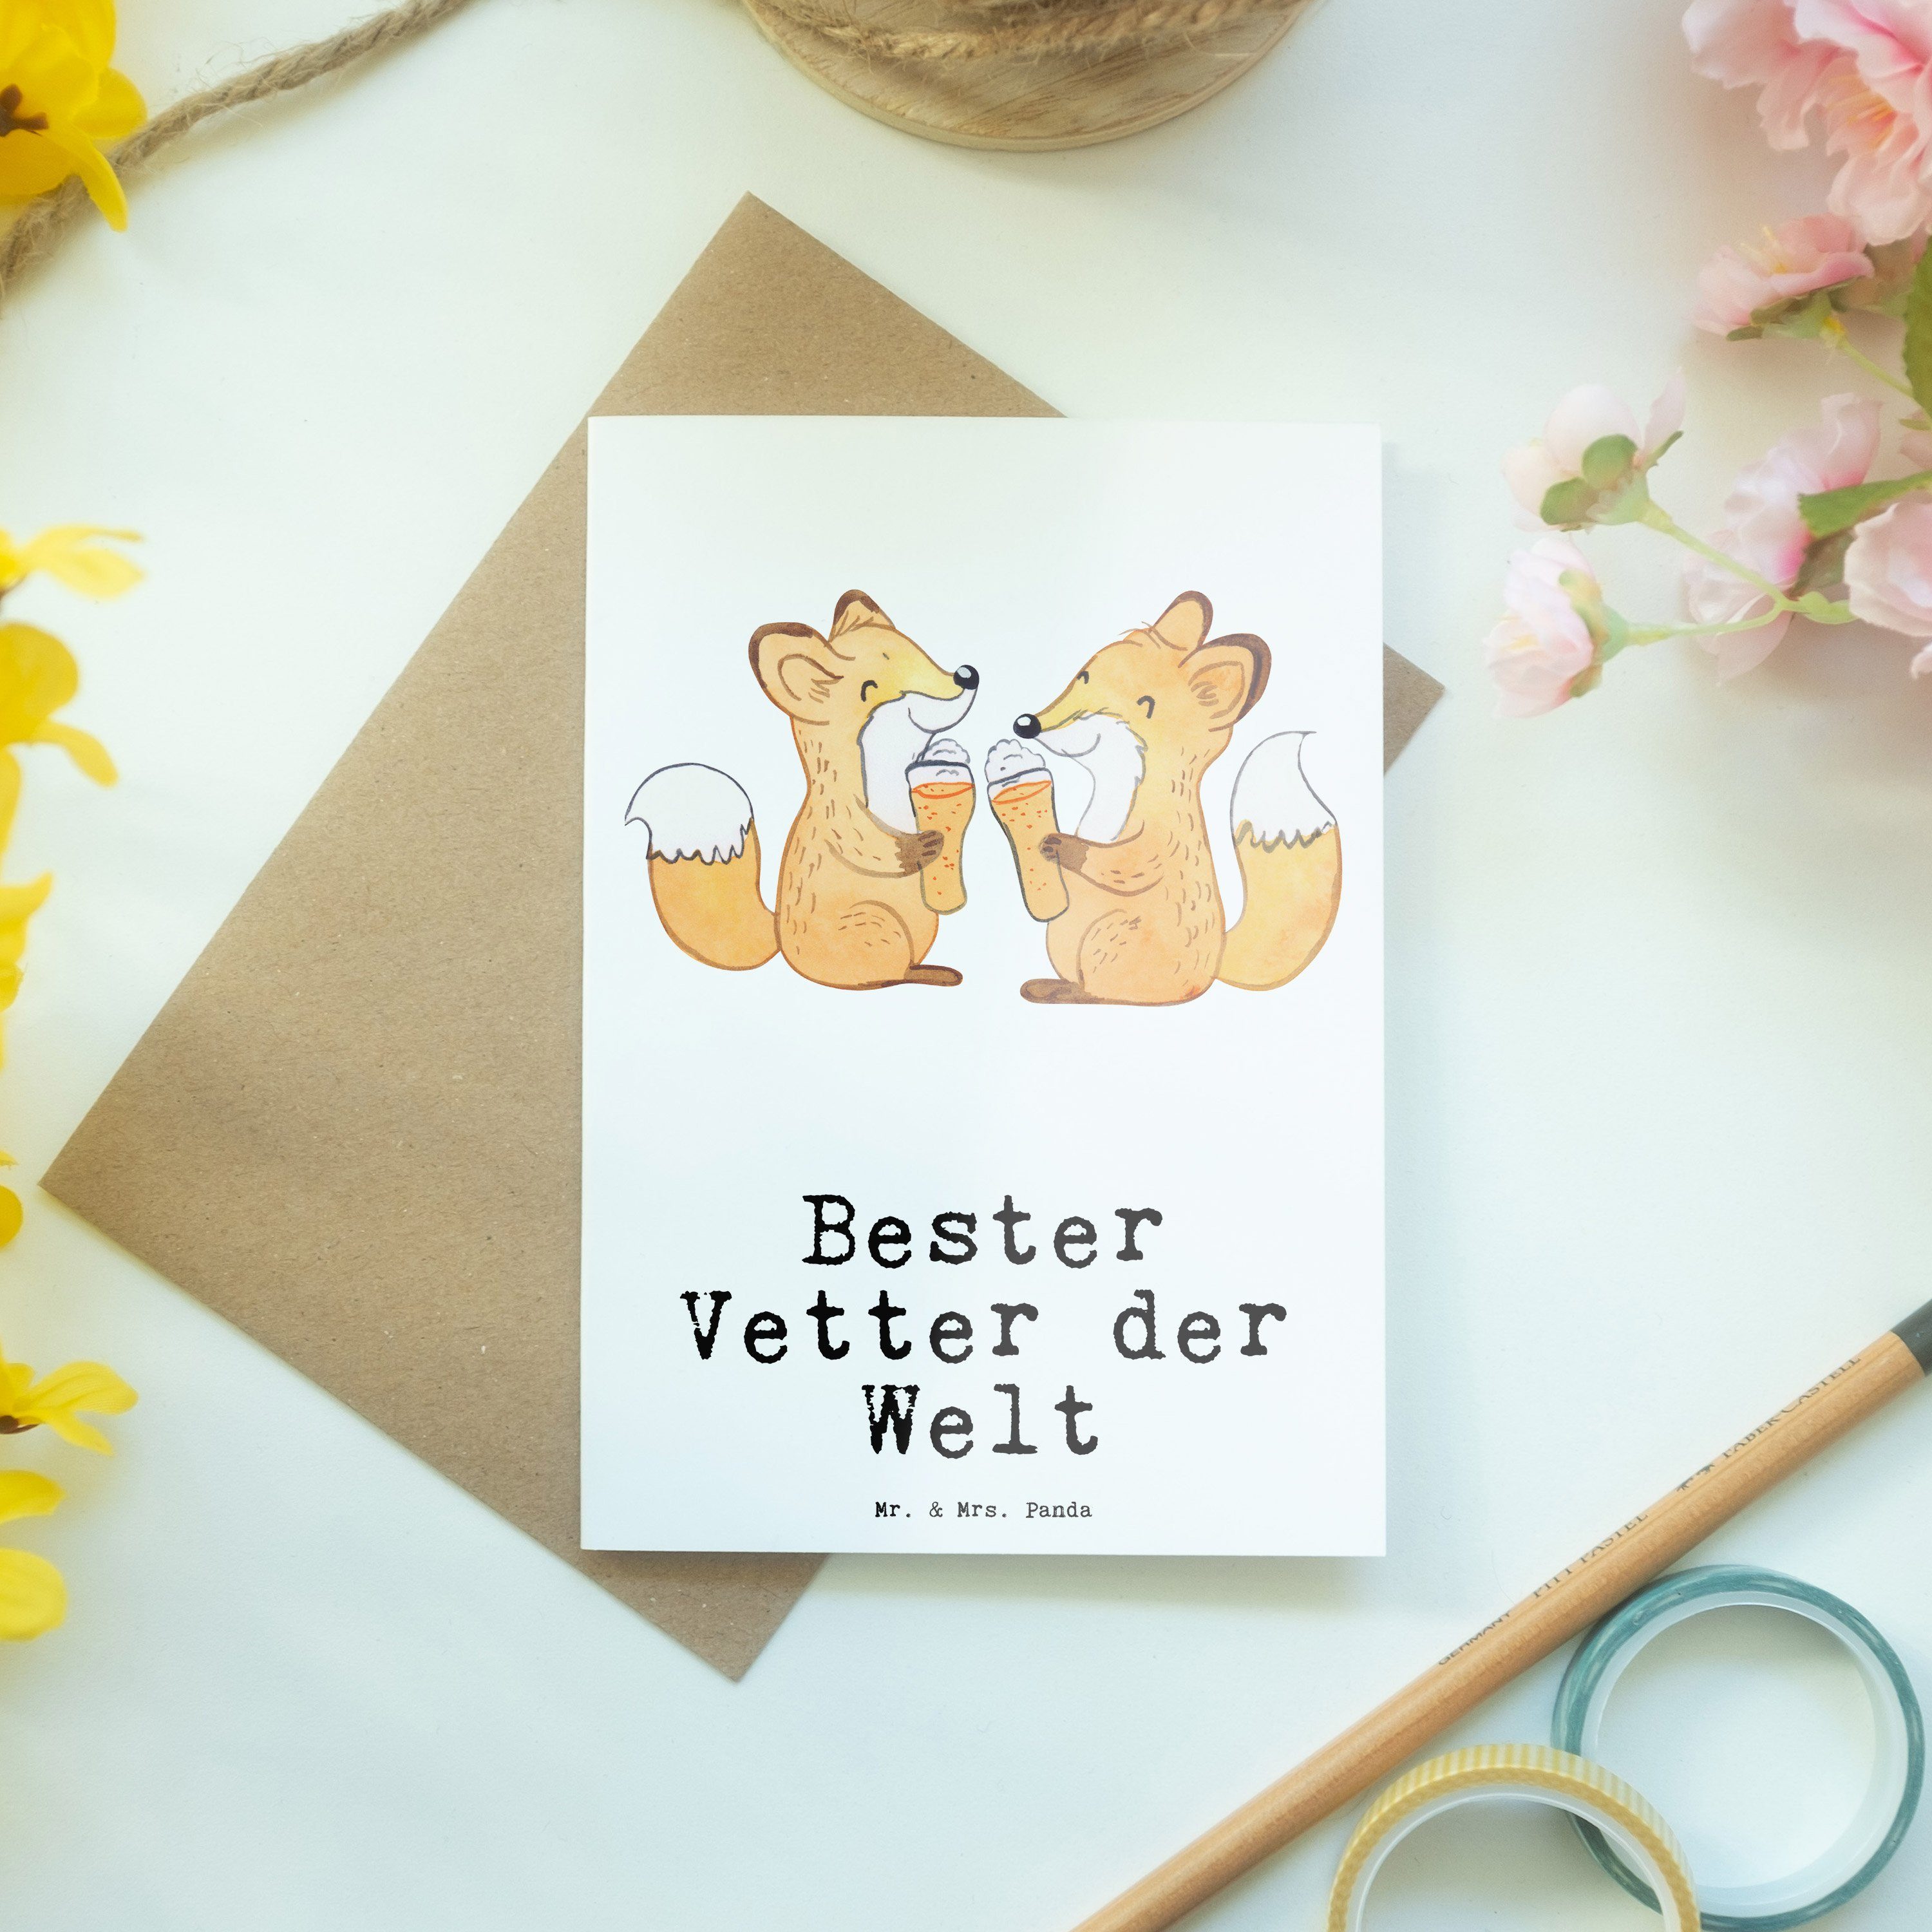 Welt Sohn Schenken, Fuchs Grußkarte - Mr. der von - Bester Vetter & Panda Weiß Geschenk, Mrs. On